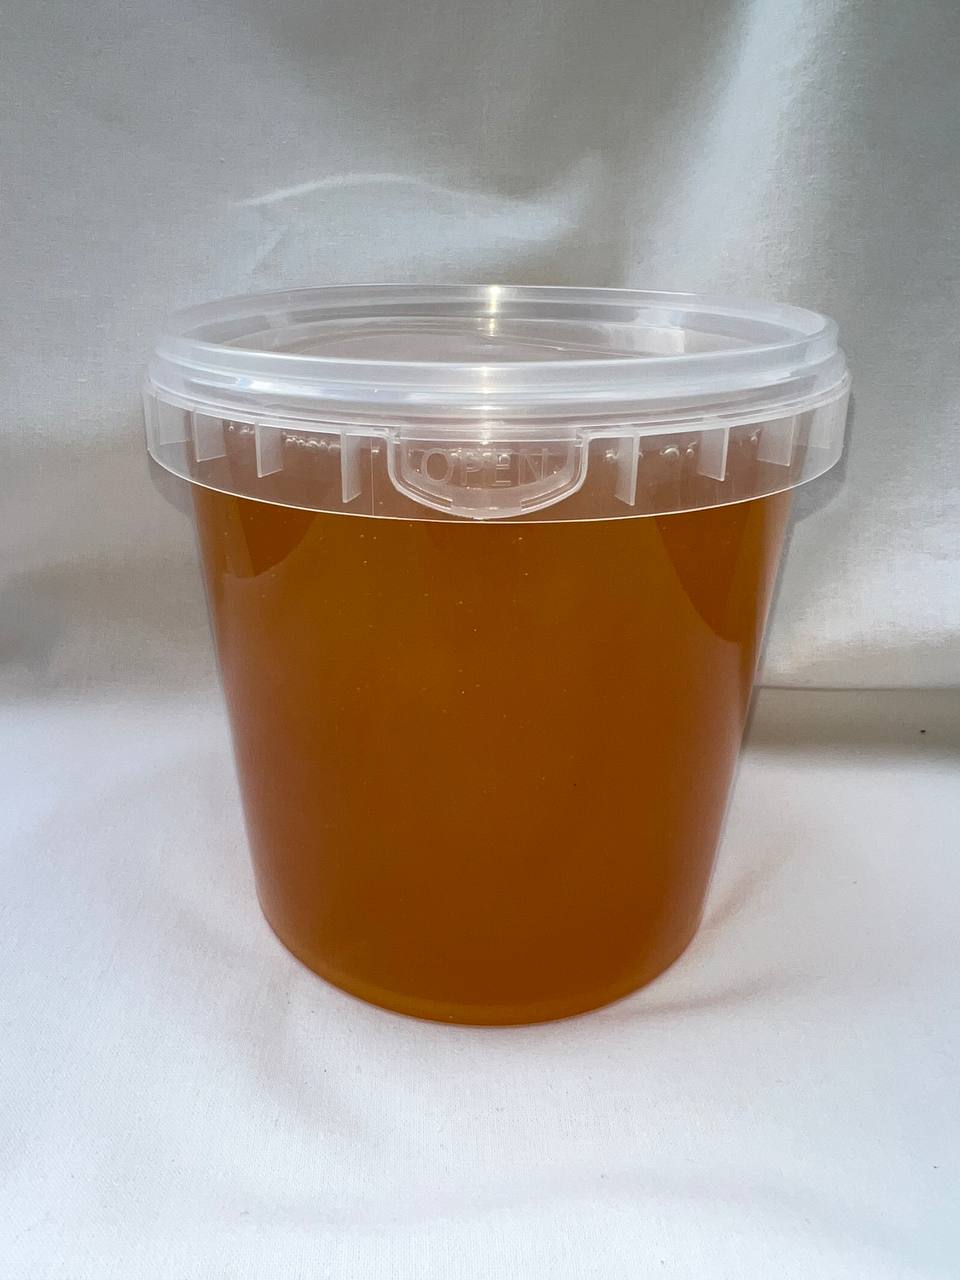 Купить Мёд в Новосибирске оптом и в розницу